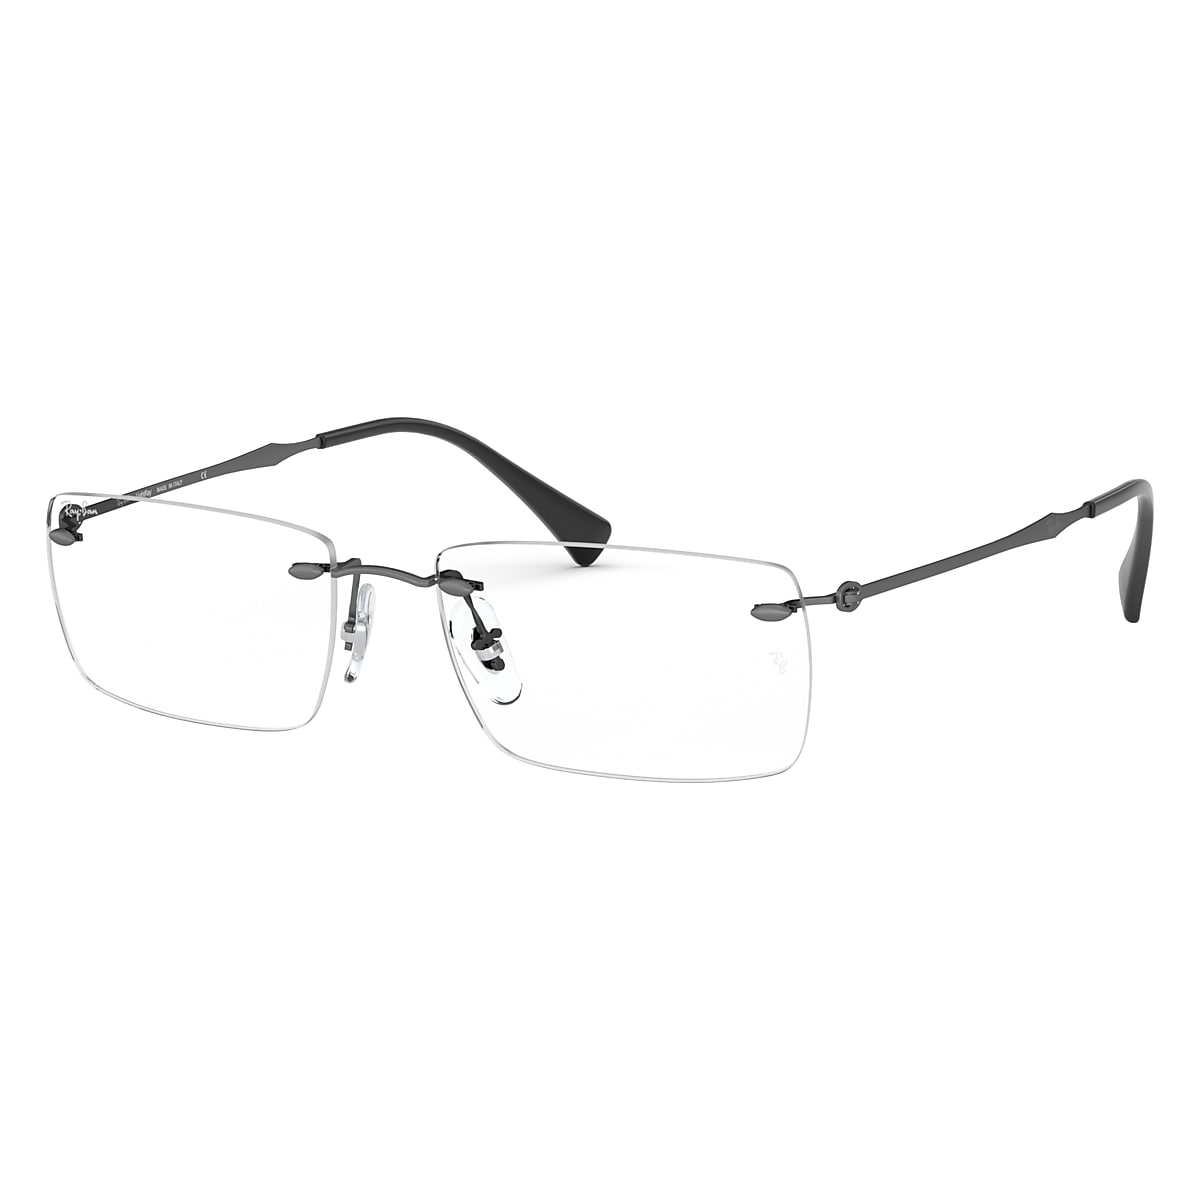 Rb8755 Optics Eyeglasses with Gunmetal Frame | Ray-Ban®